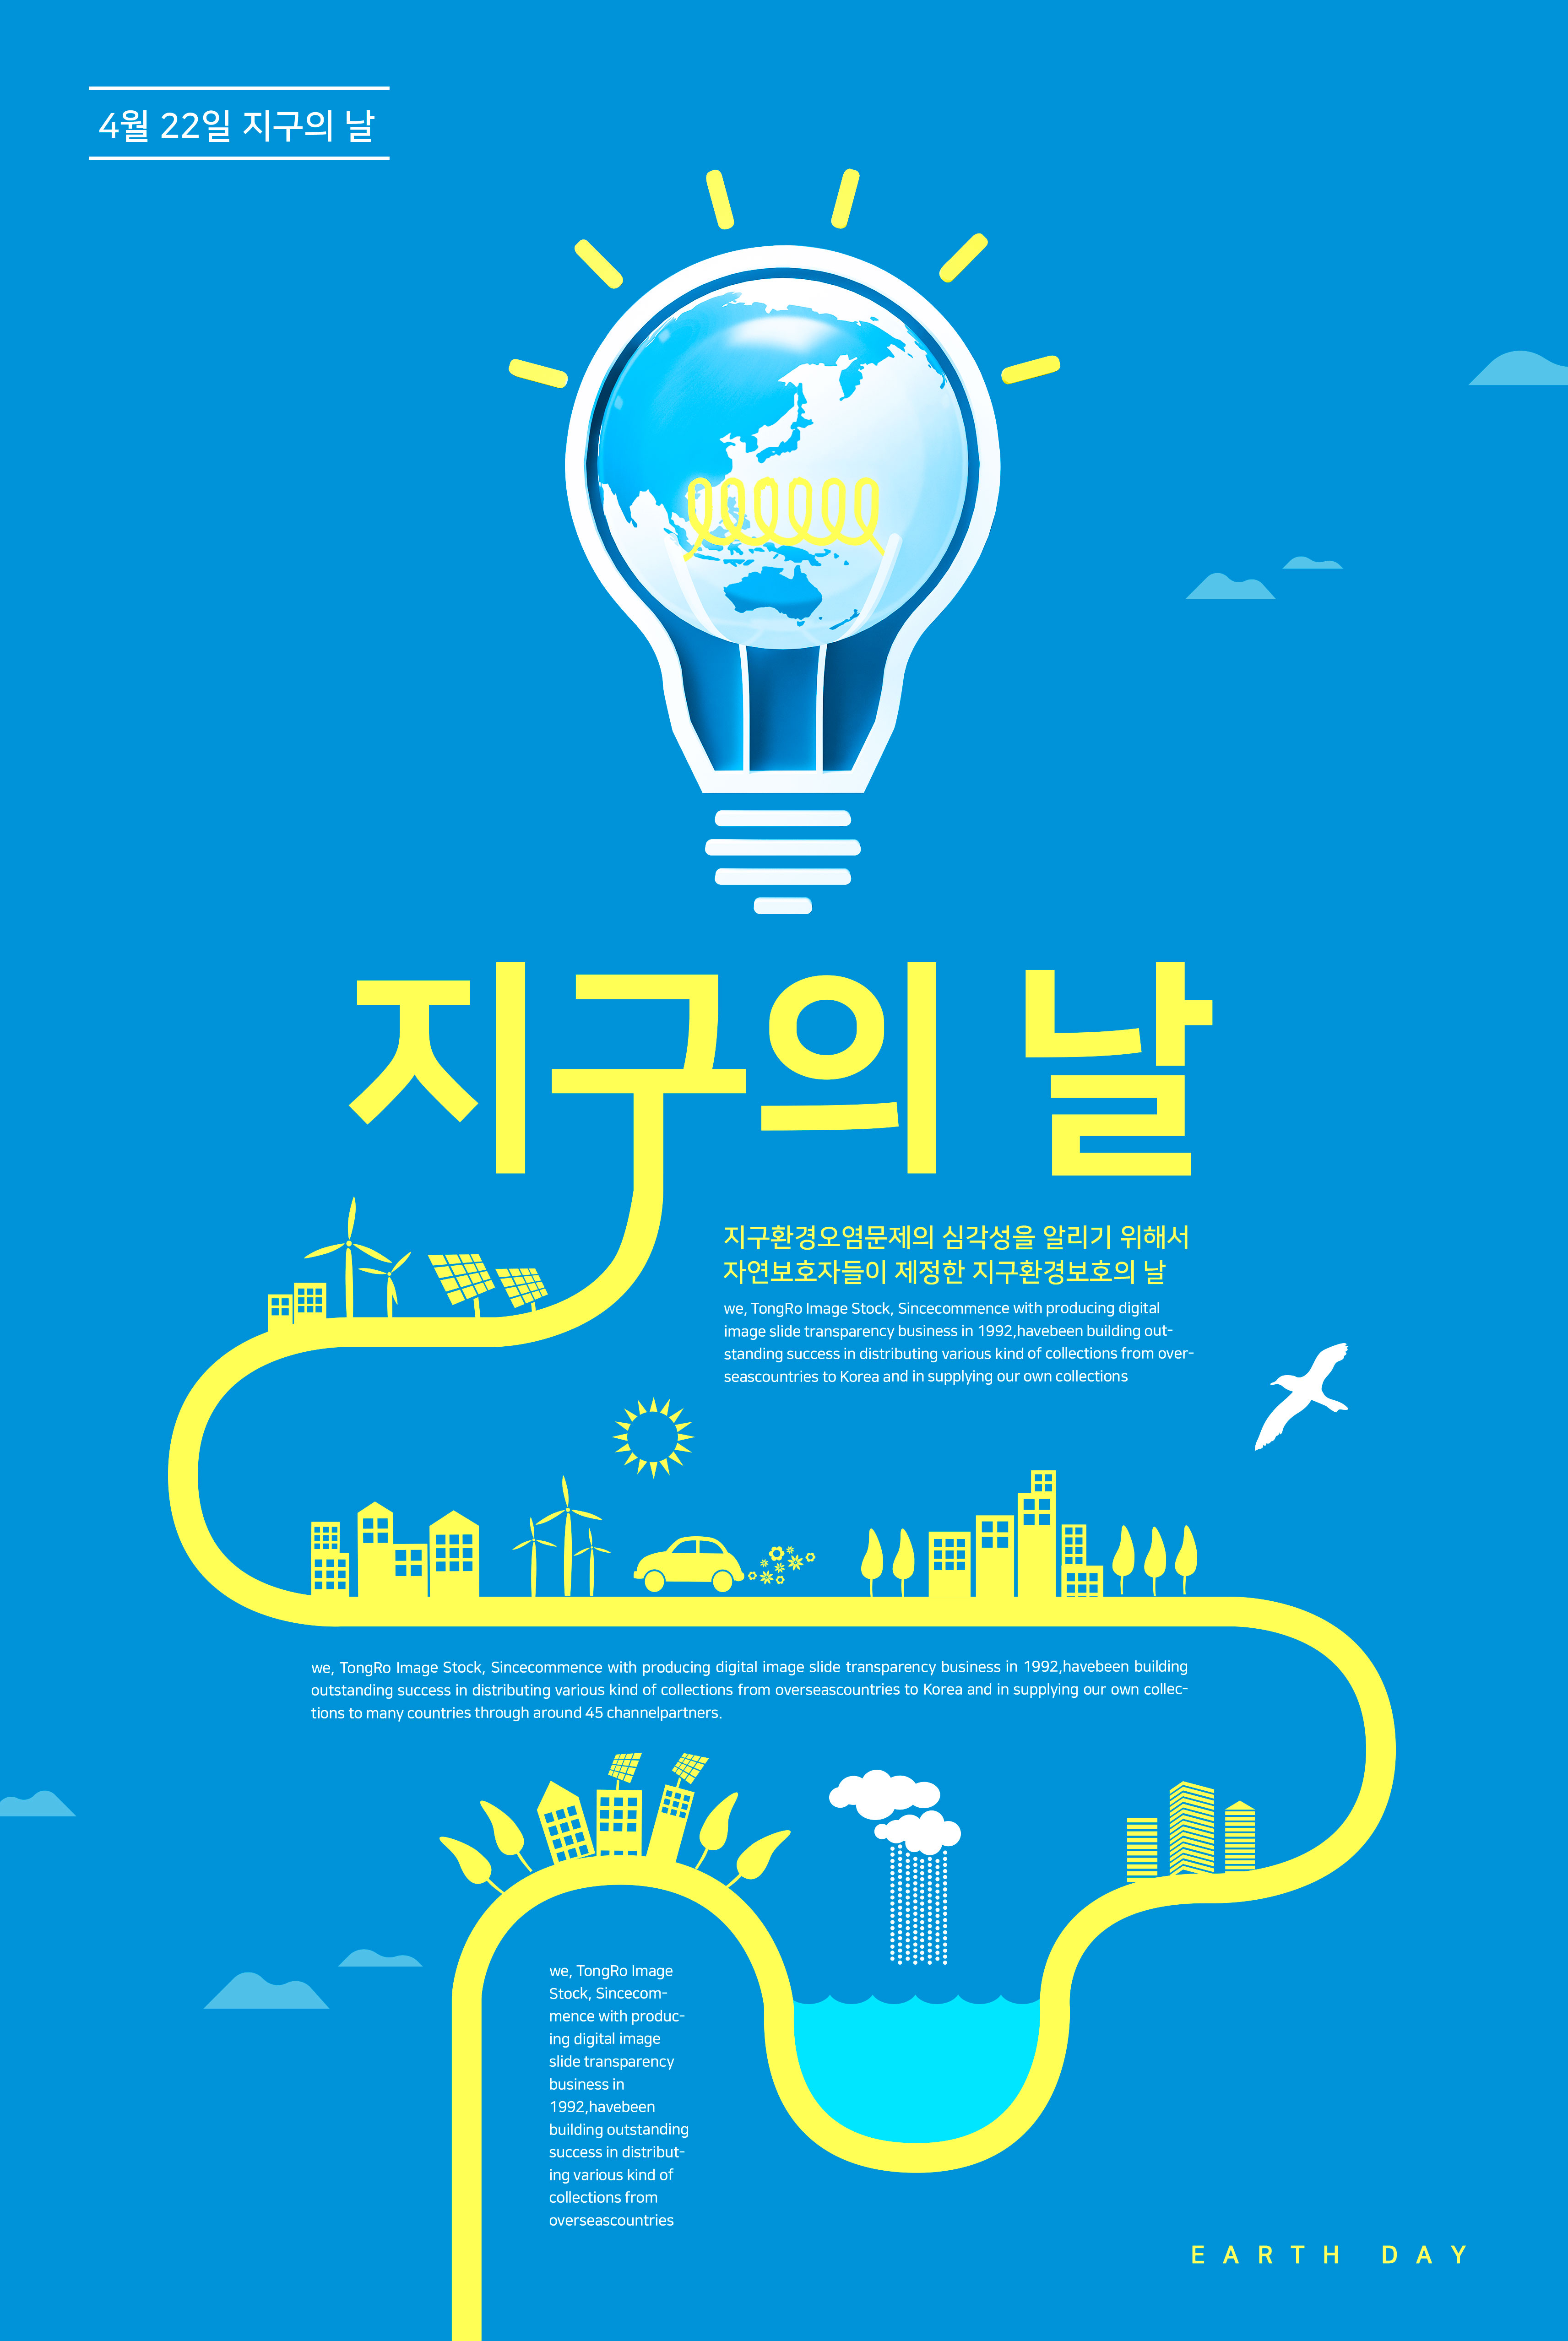 二次能源电能主题世界地球日宣传海报PSD素材大洋岛精选psd素材插图